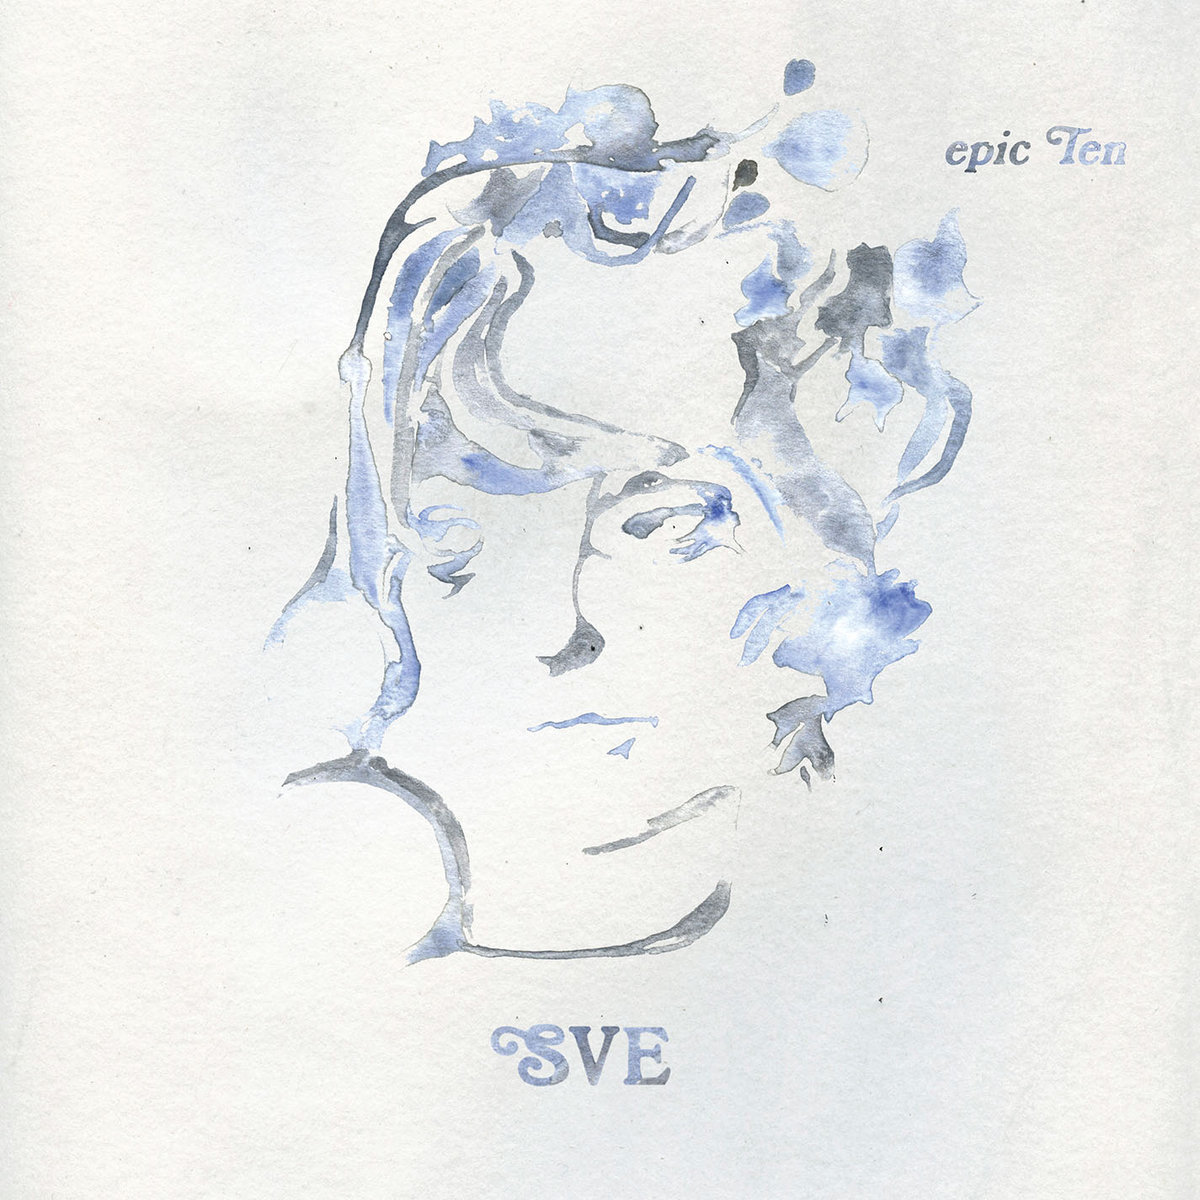  Capa do álbum Epic Ten. Nele consta um fundo branco texturizado, onde está no centro o desenho de um rosto de uma mulher, em tons de azul claro e cinza, que estão mesclados. Em baixo estão as iniciais da cantora, SVE, também em tons de azul e cinza.